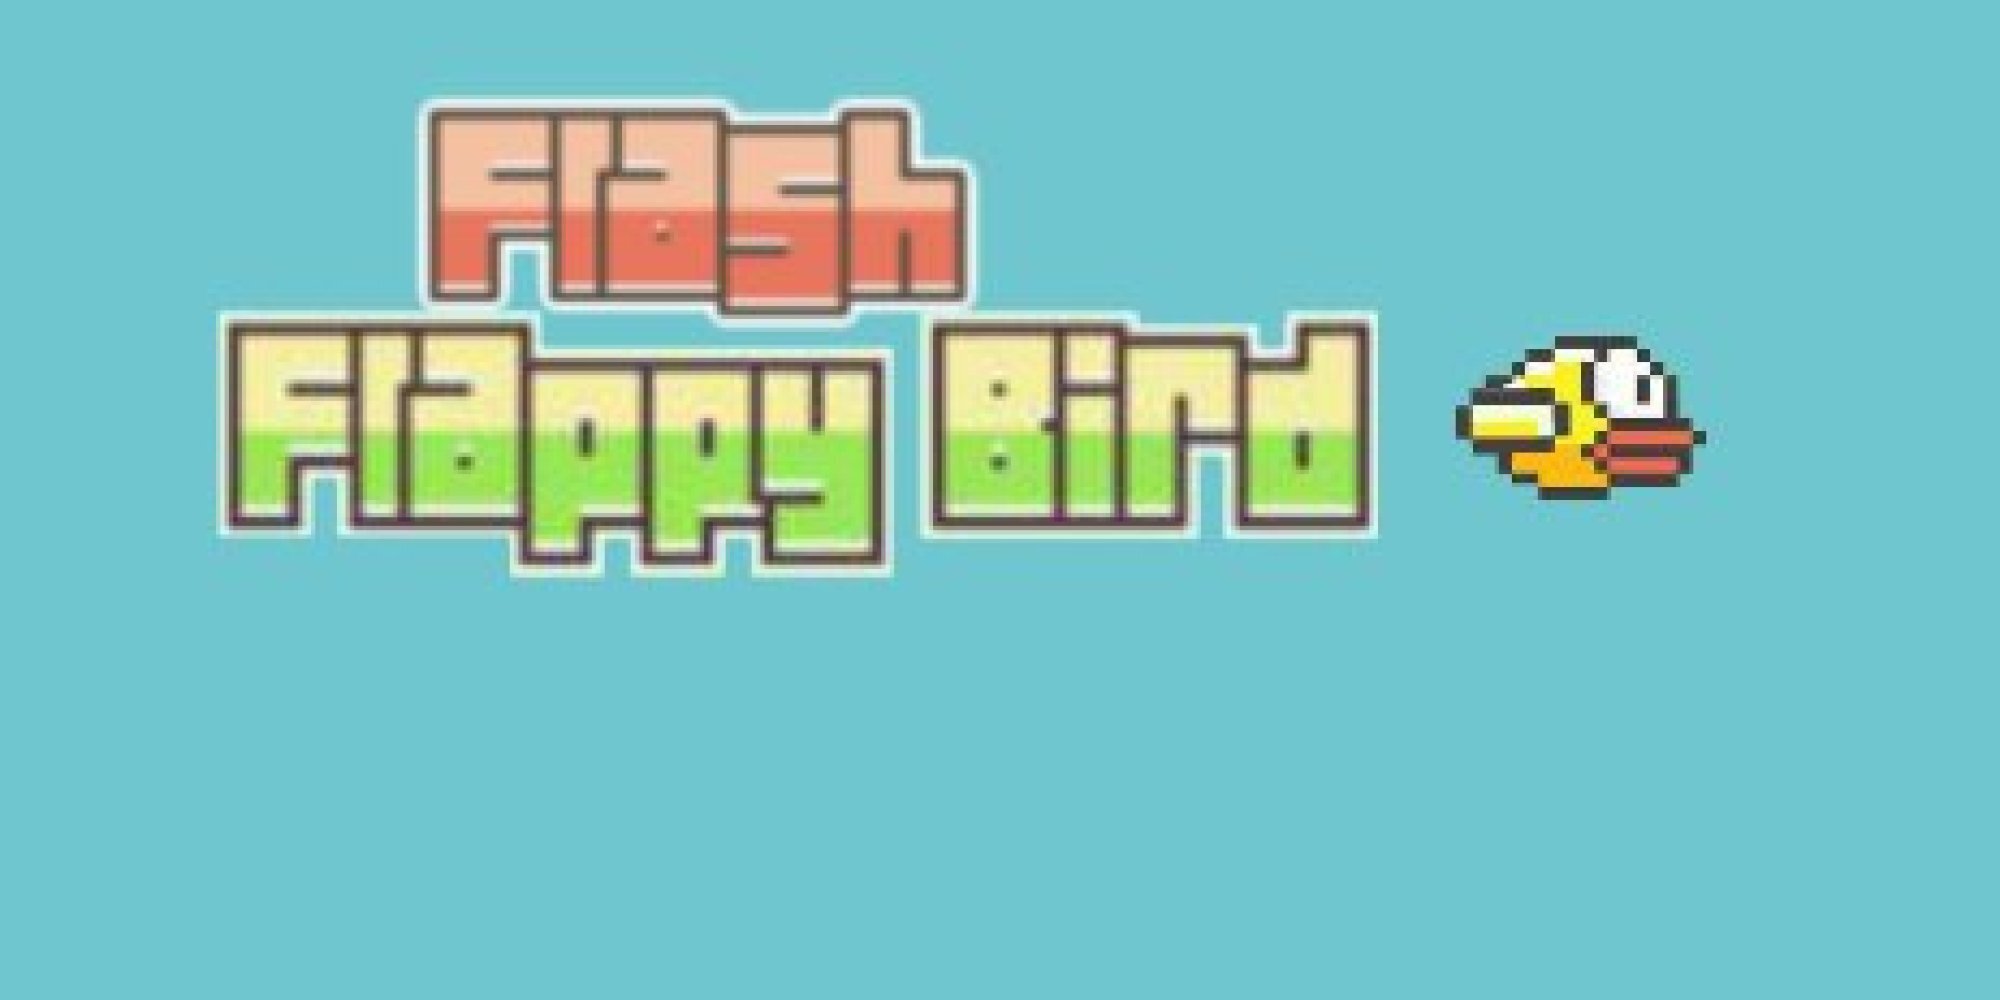 g flappy bird online